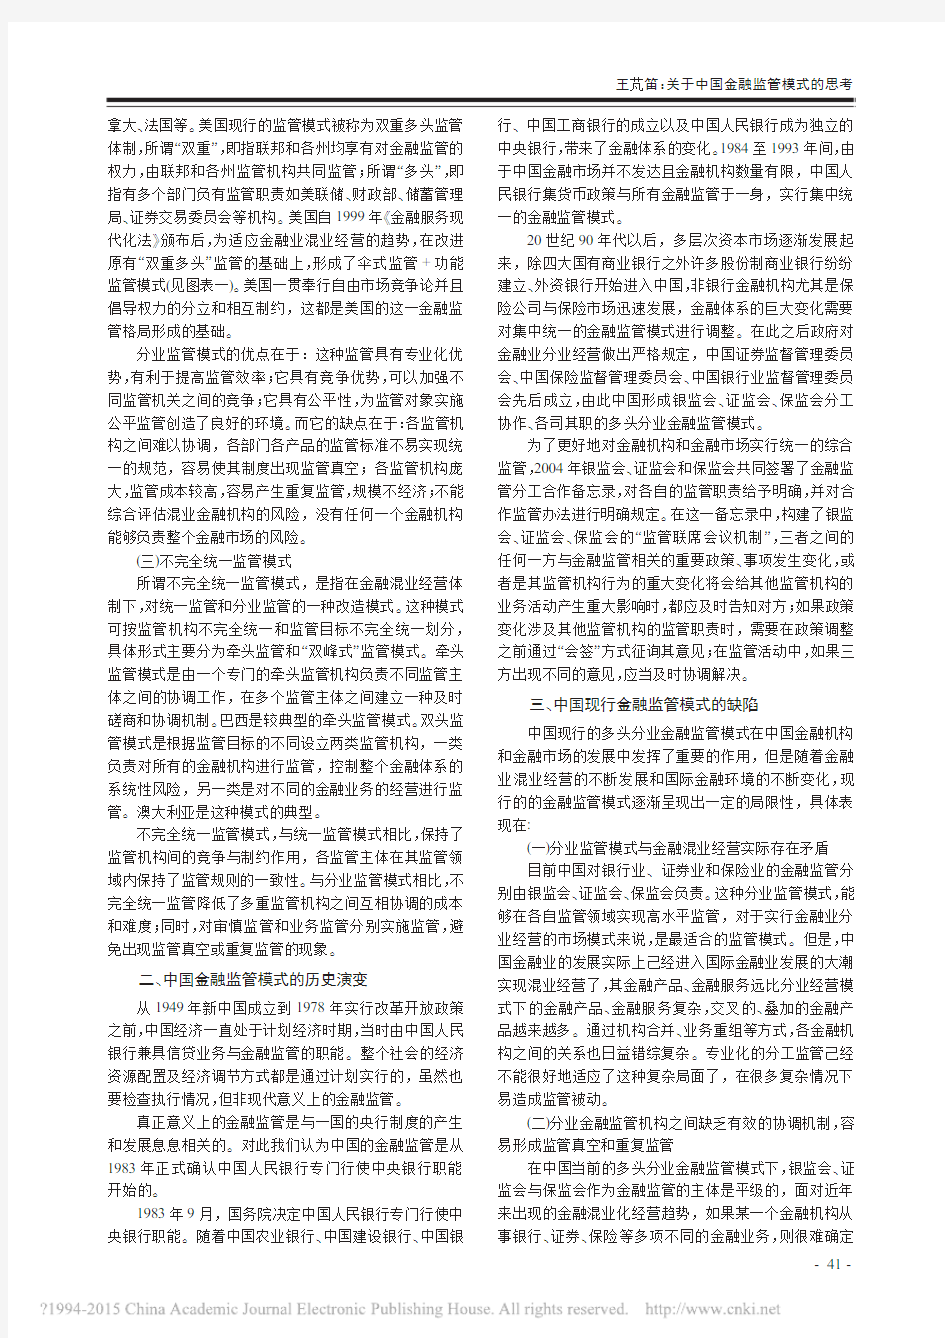 12.商业经济 2012年08期 关于中国金融监管模式的思考_王芃笛